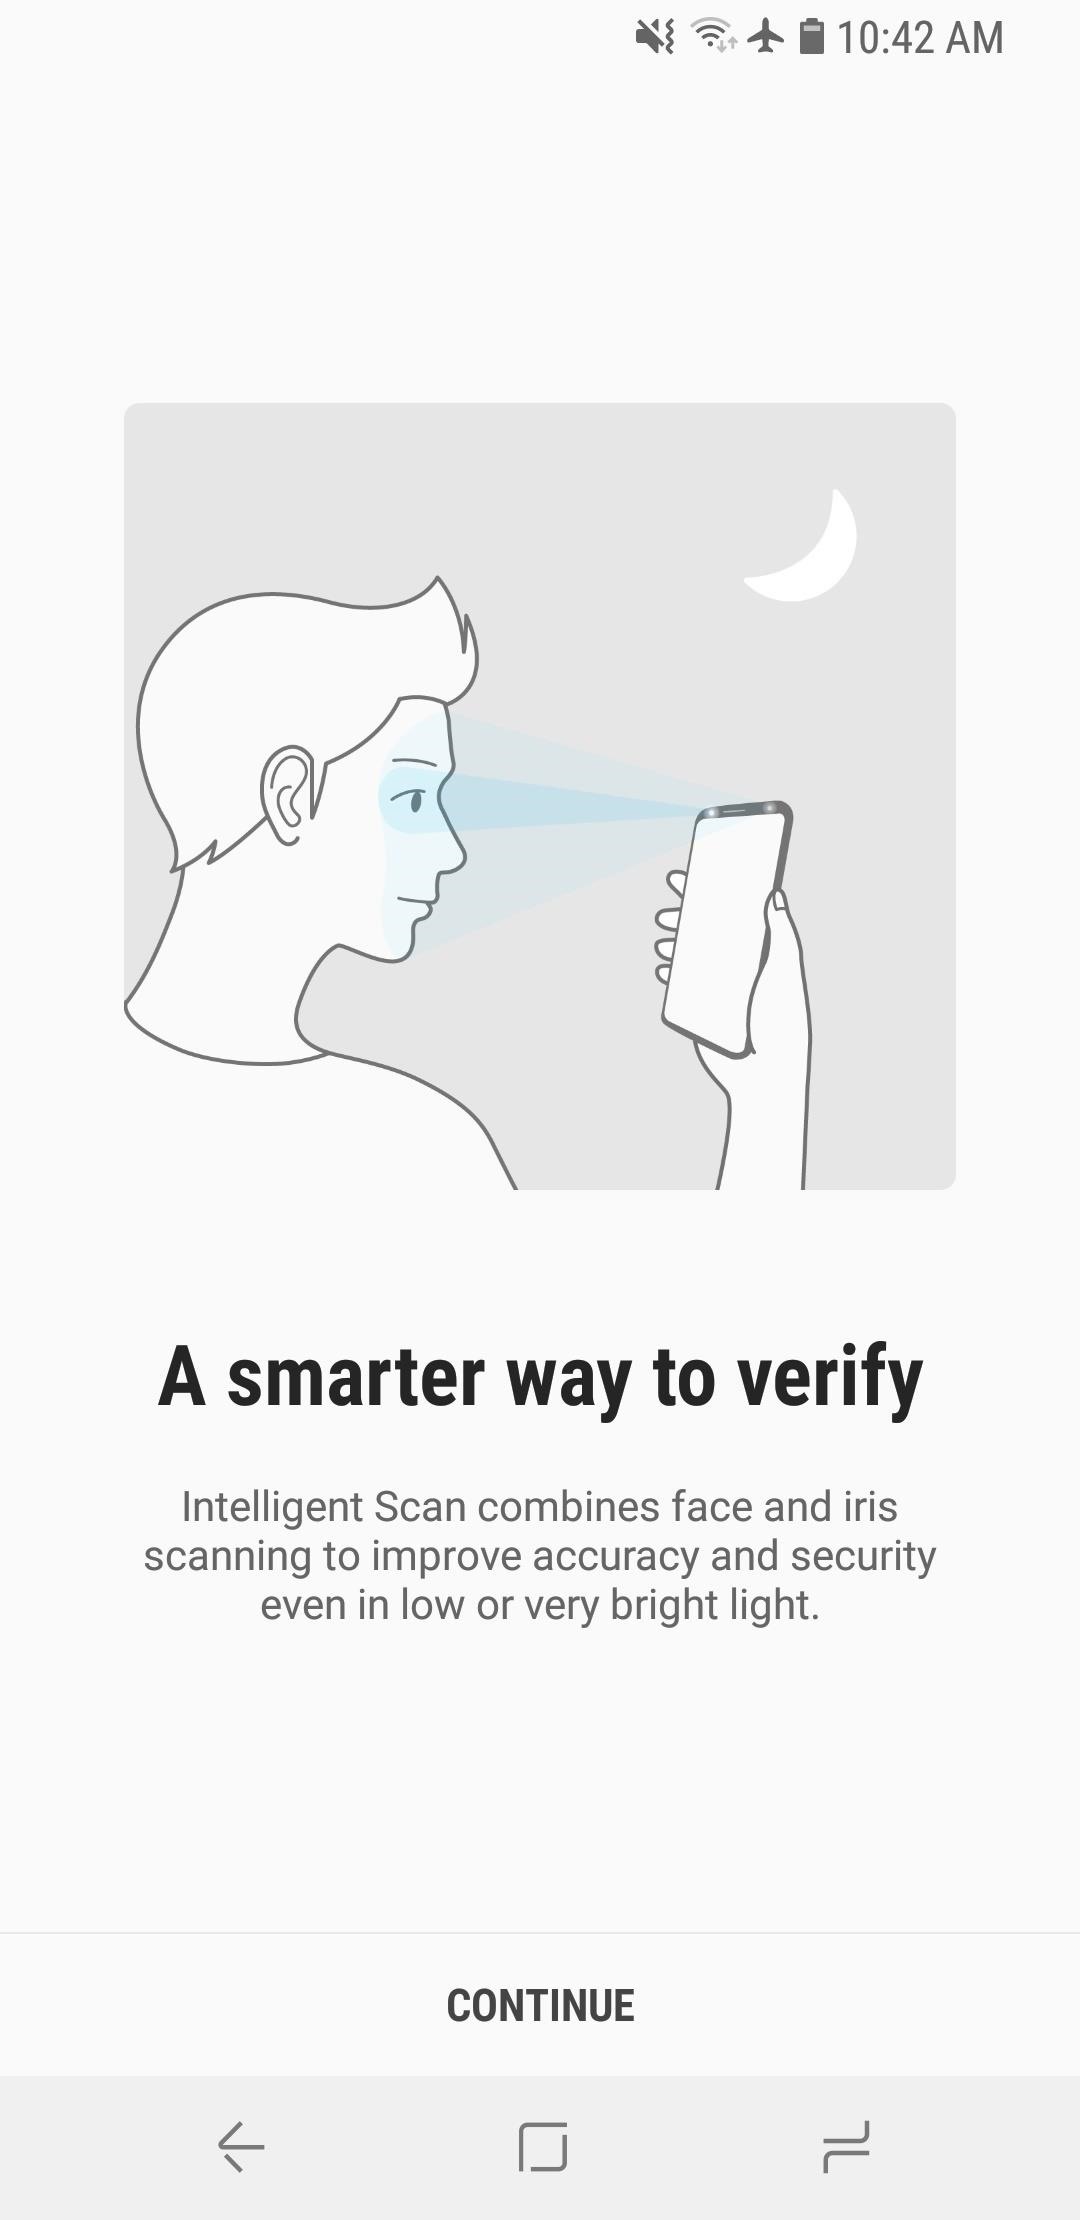 Cómo usar el escaneo inteligente para desbloquear la cerradura Galaxy S9 más rápido